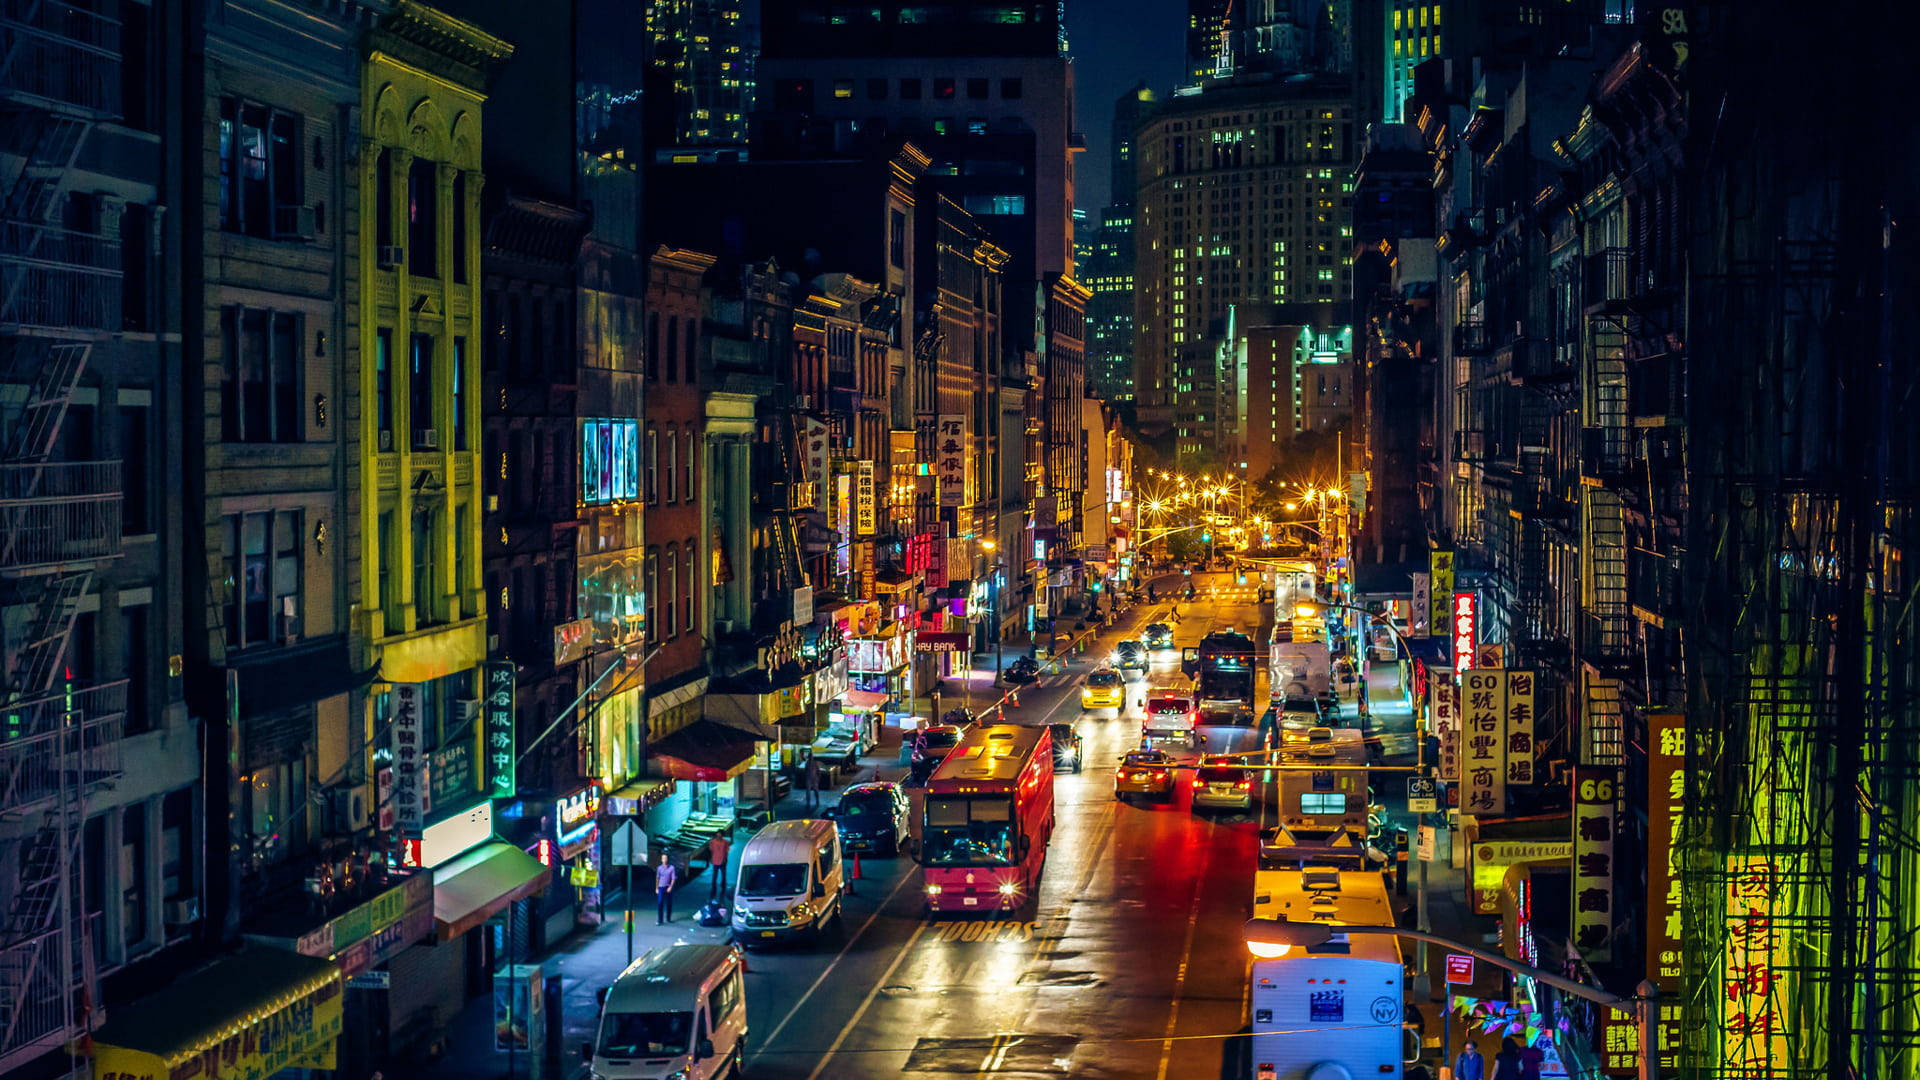 Chinatownstadtbild Bei Nacht Wallpaper